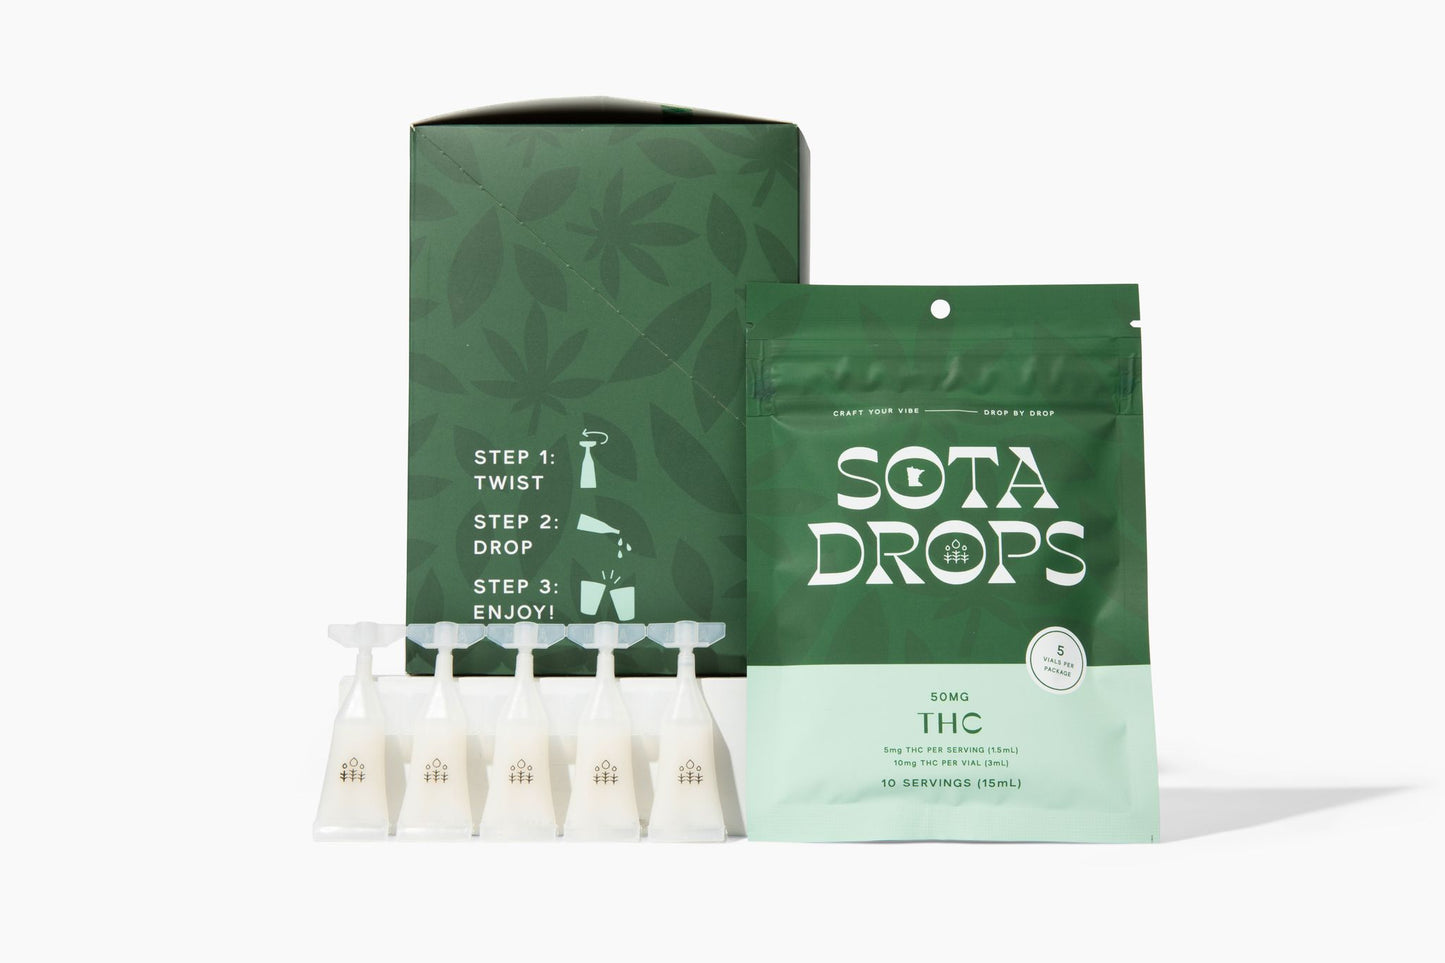 Sota Drops THC (5 Vials) Bundle Box